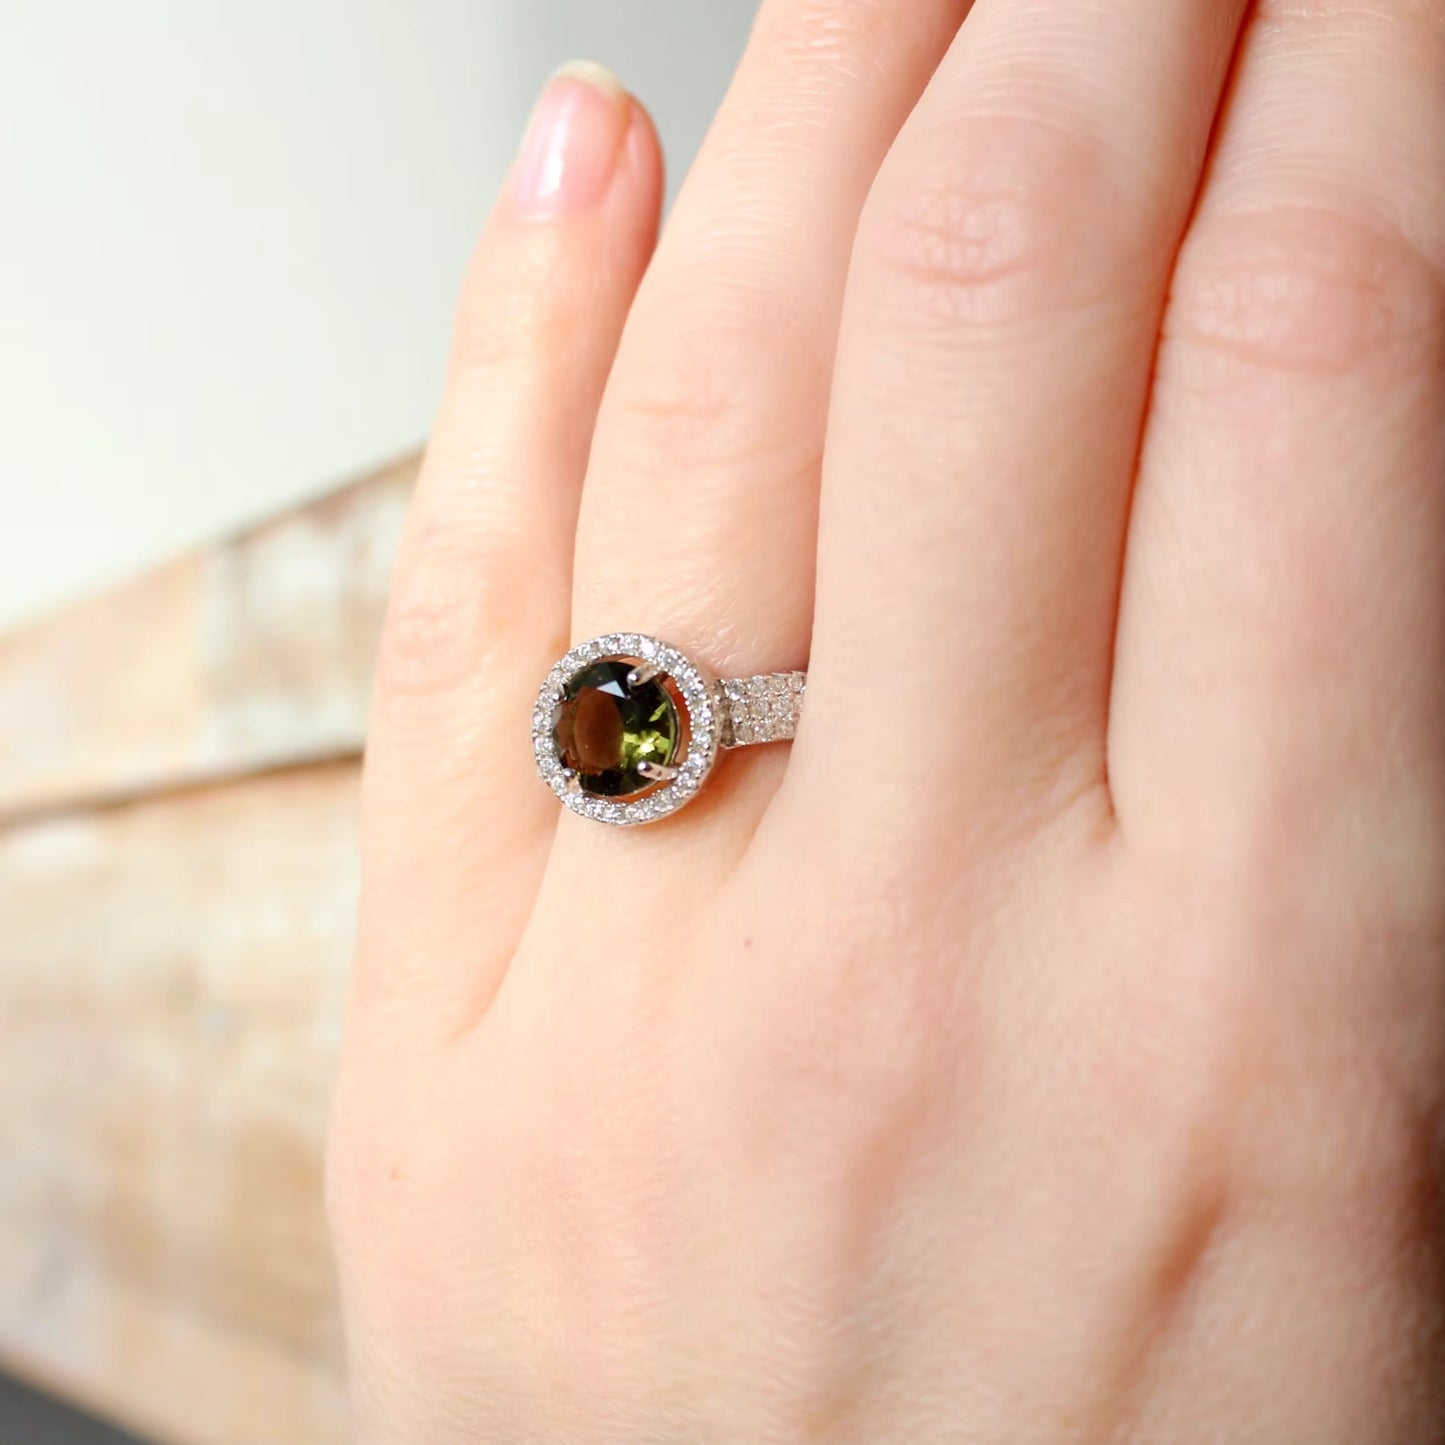 Genuine moldavite ring 8 mm stone, real Moldavite ring Silver, Czech moldavite ring with certificate Moldavite jewelry Moldavite wedding ring